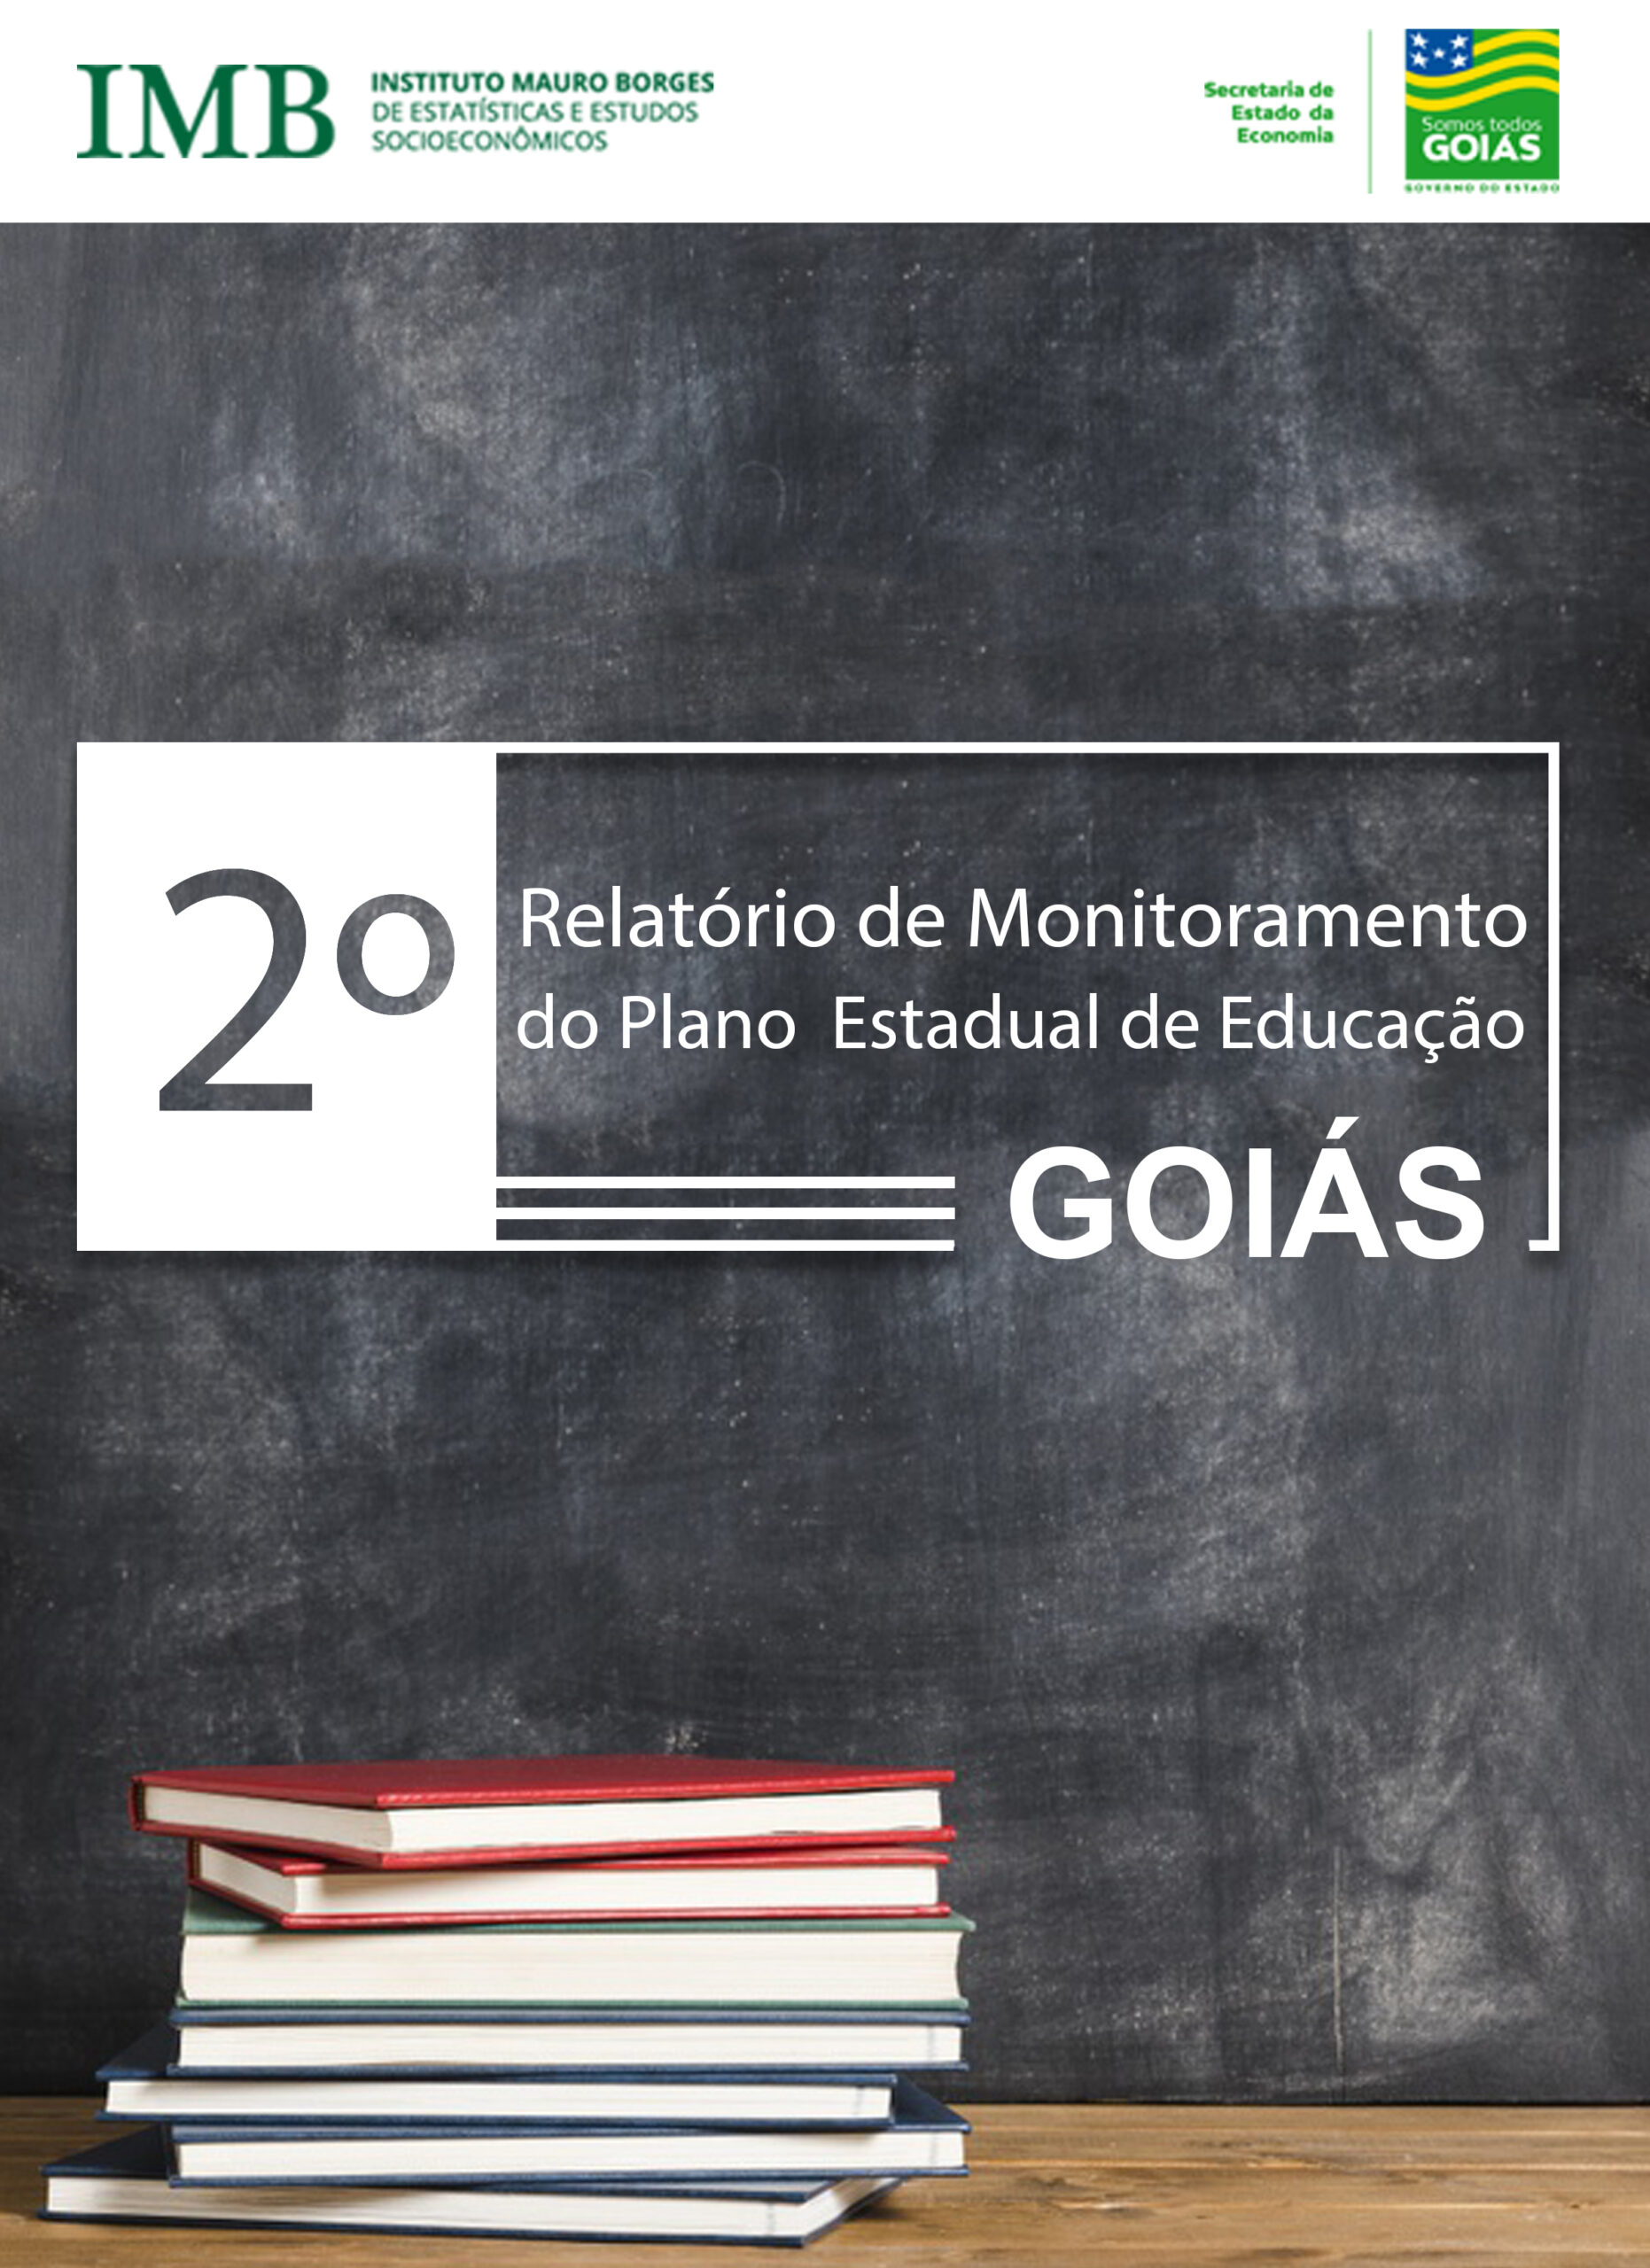 2º Relatório de Monitoramento do Plano Estadual de Educação de Goiás